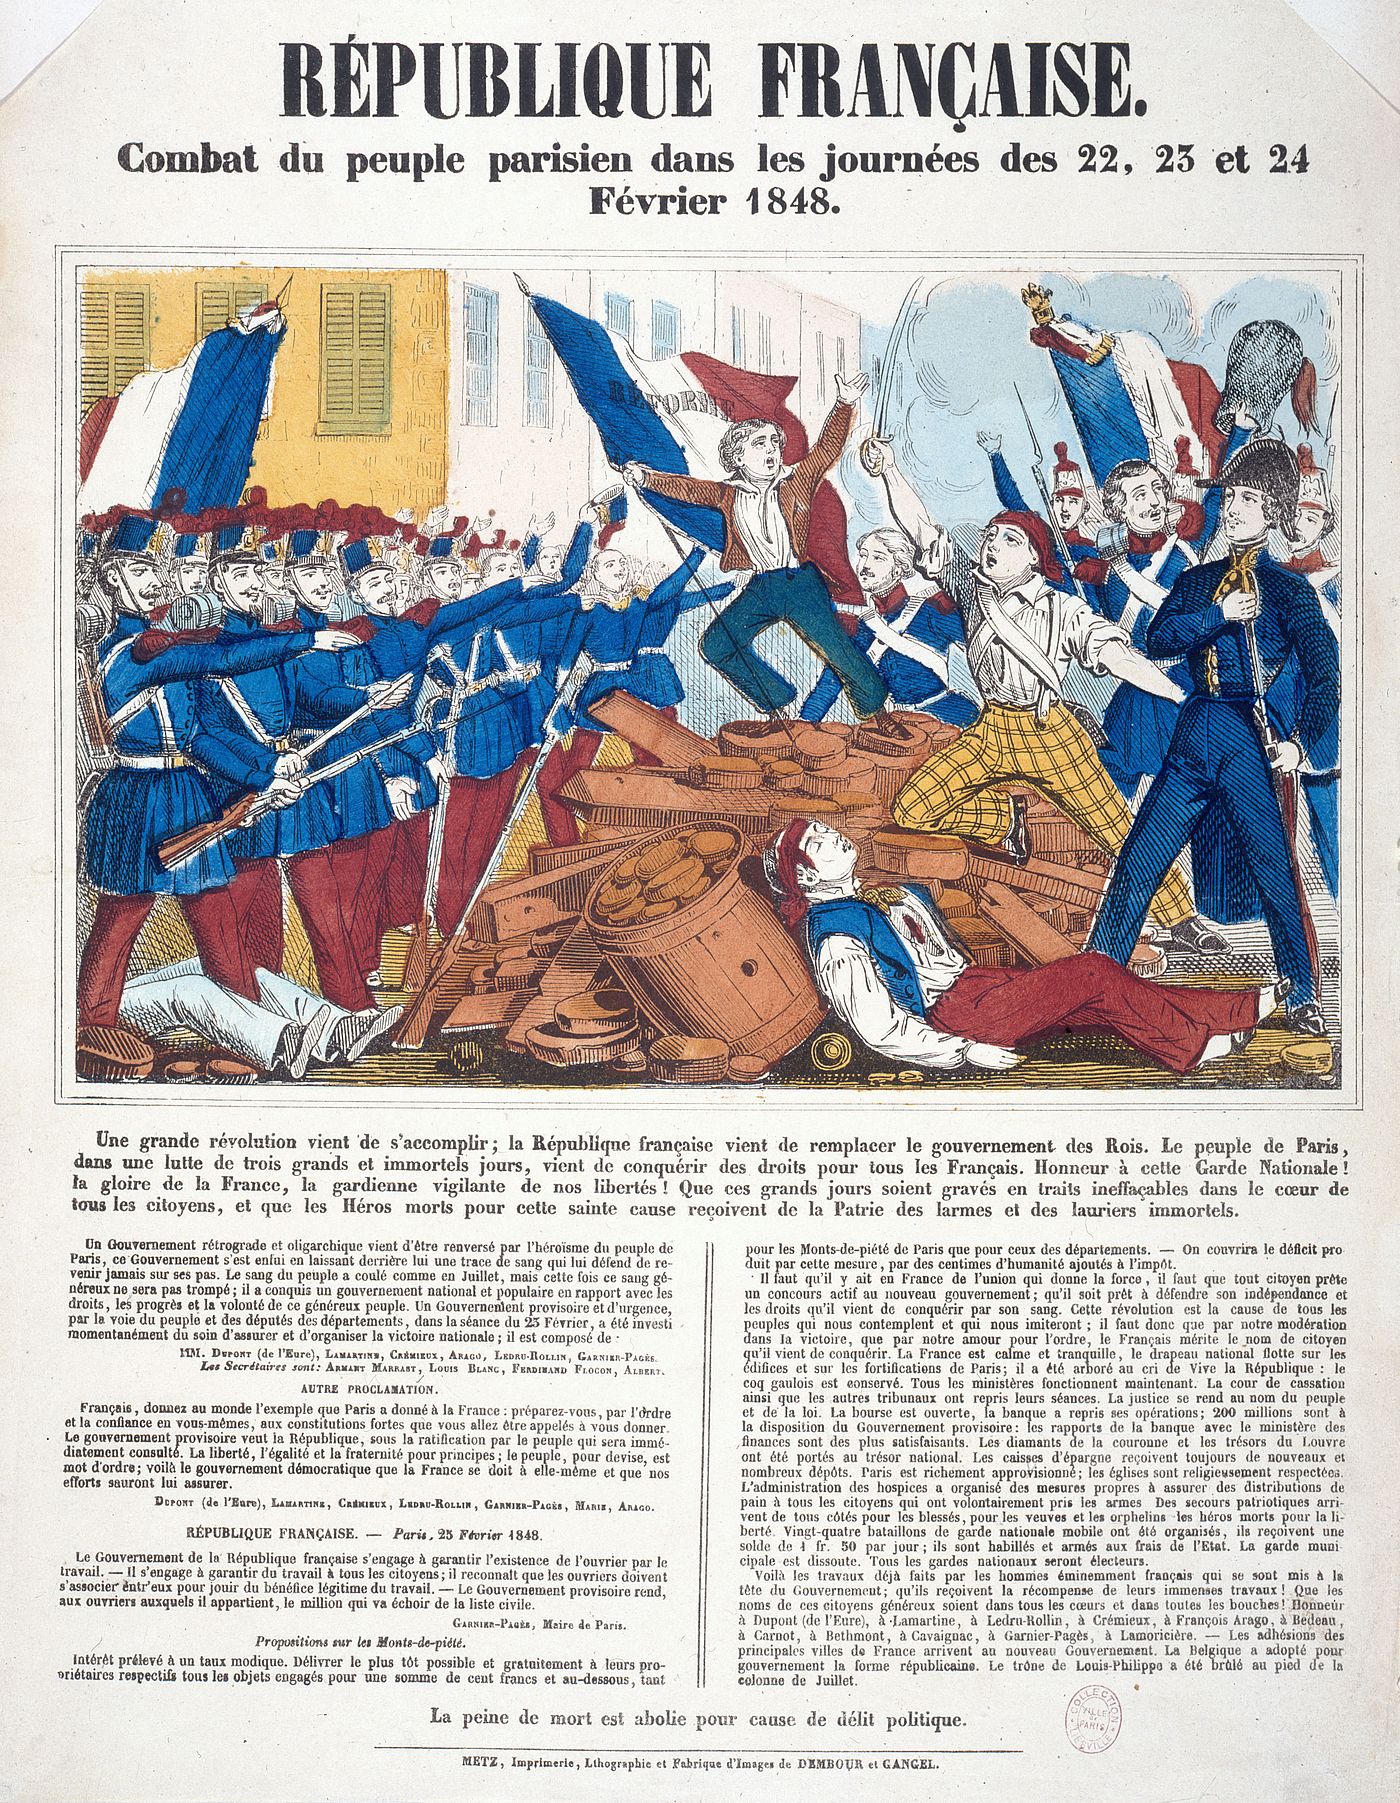 Combat du peuple parisien dans les journées des 22, 23 et 24 février 1848